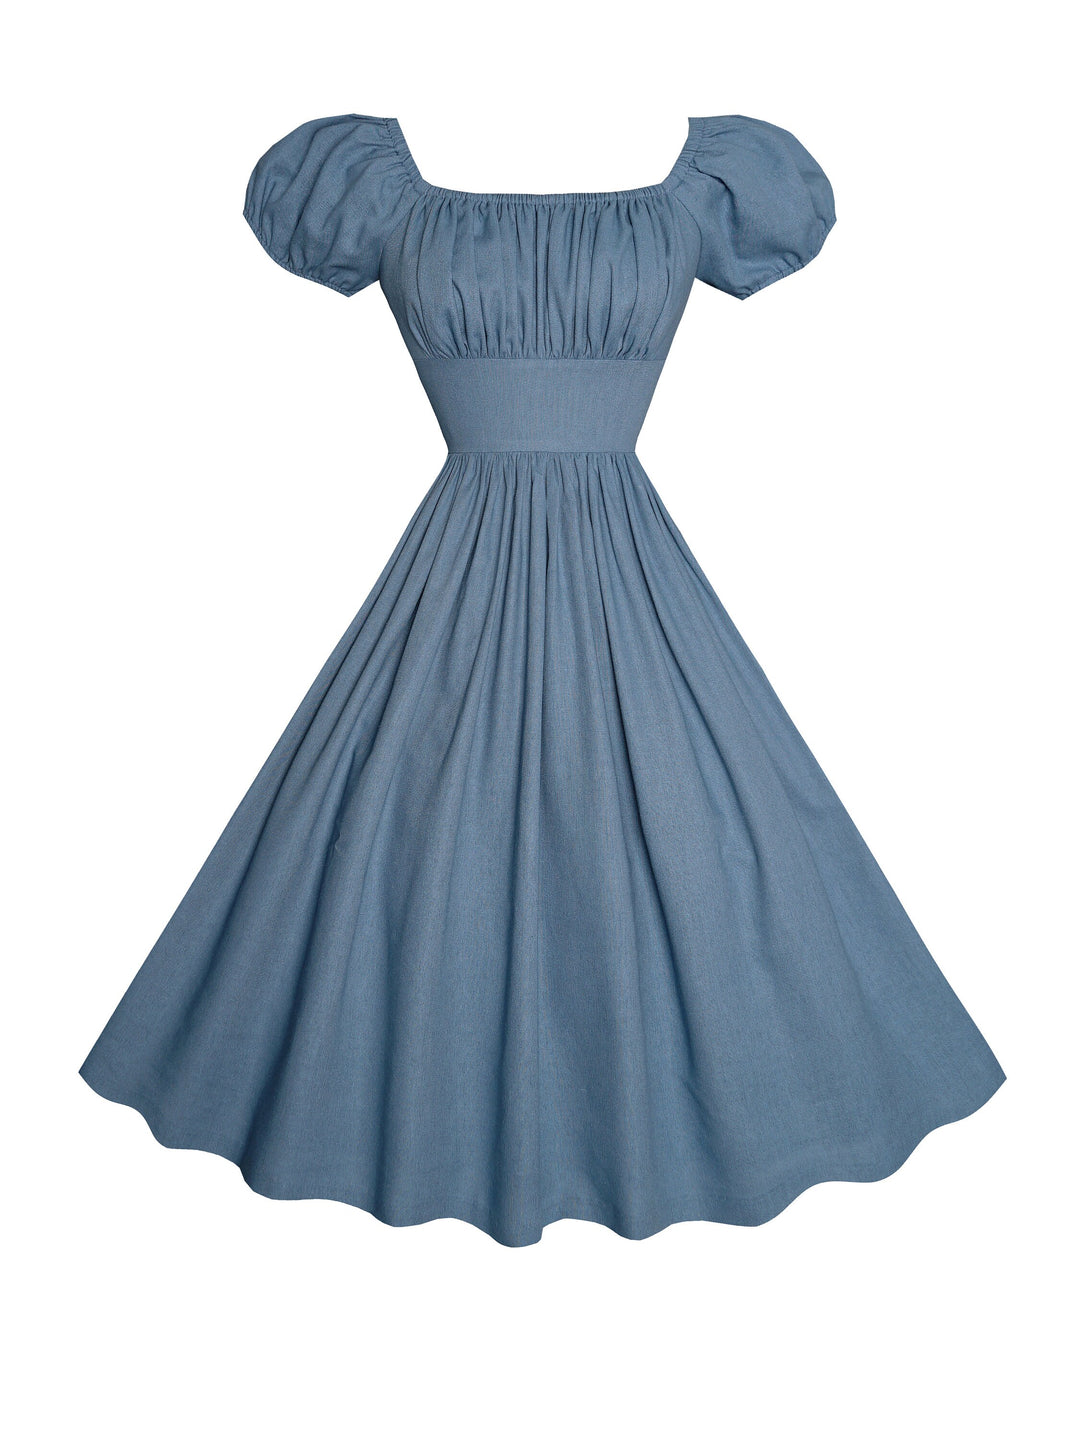 MTO - Loretta Dress in Carolina Blue Linen